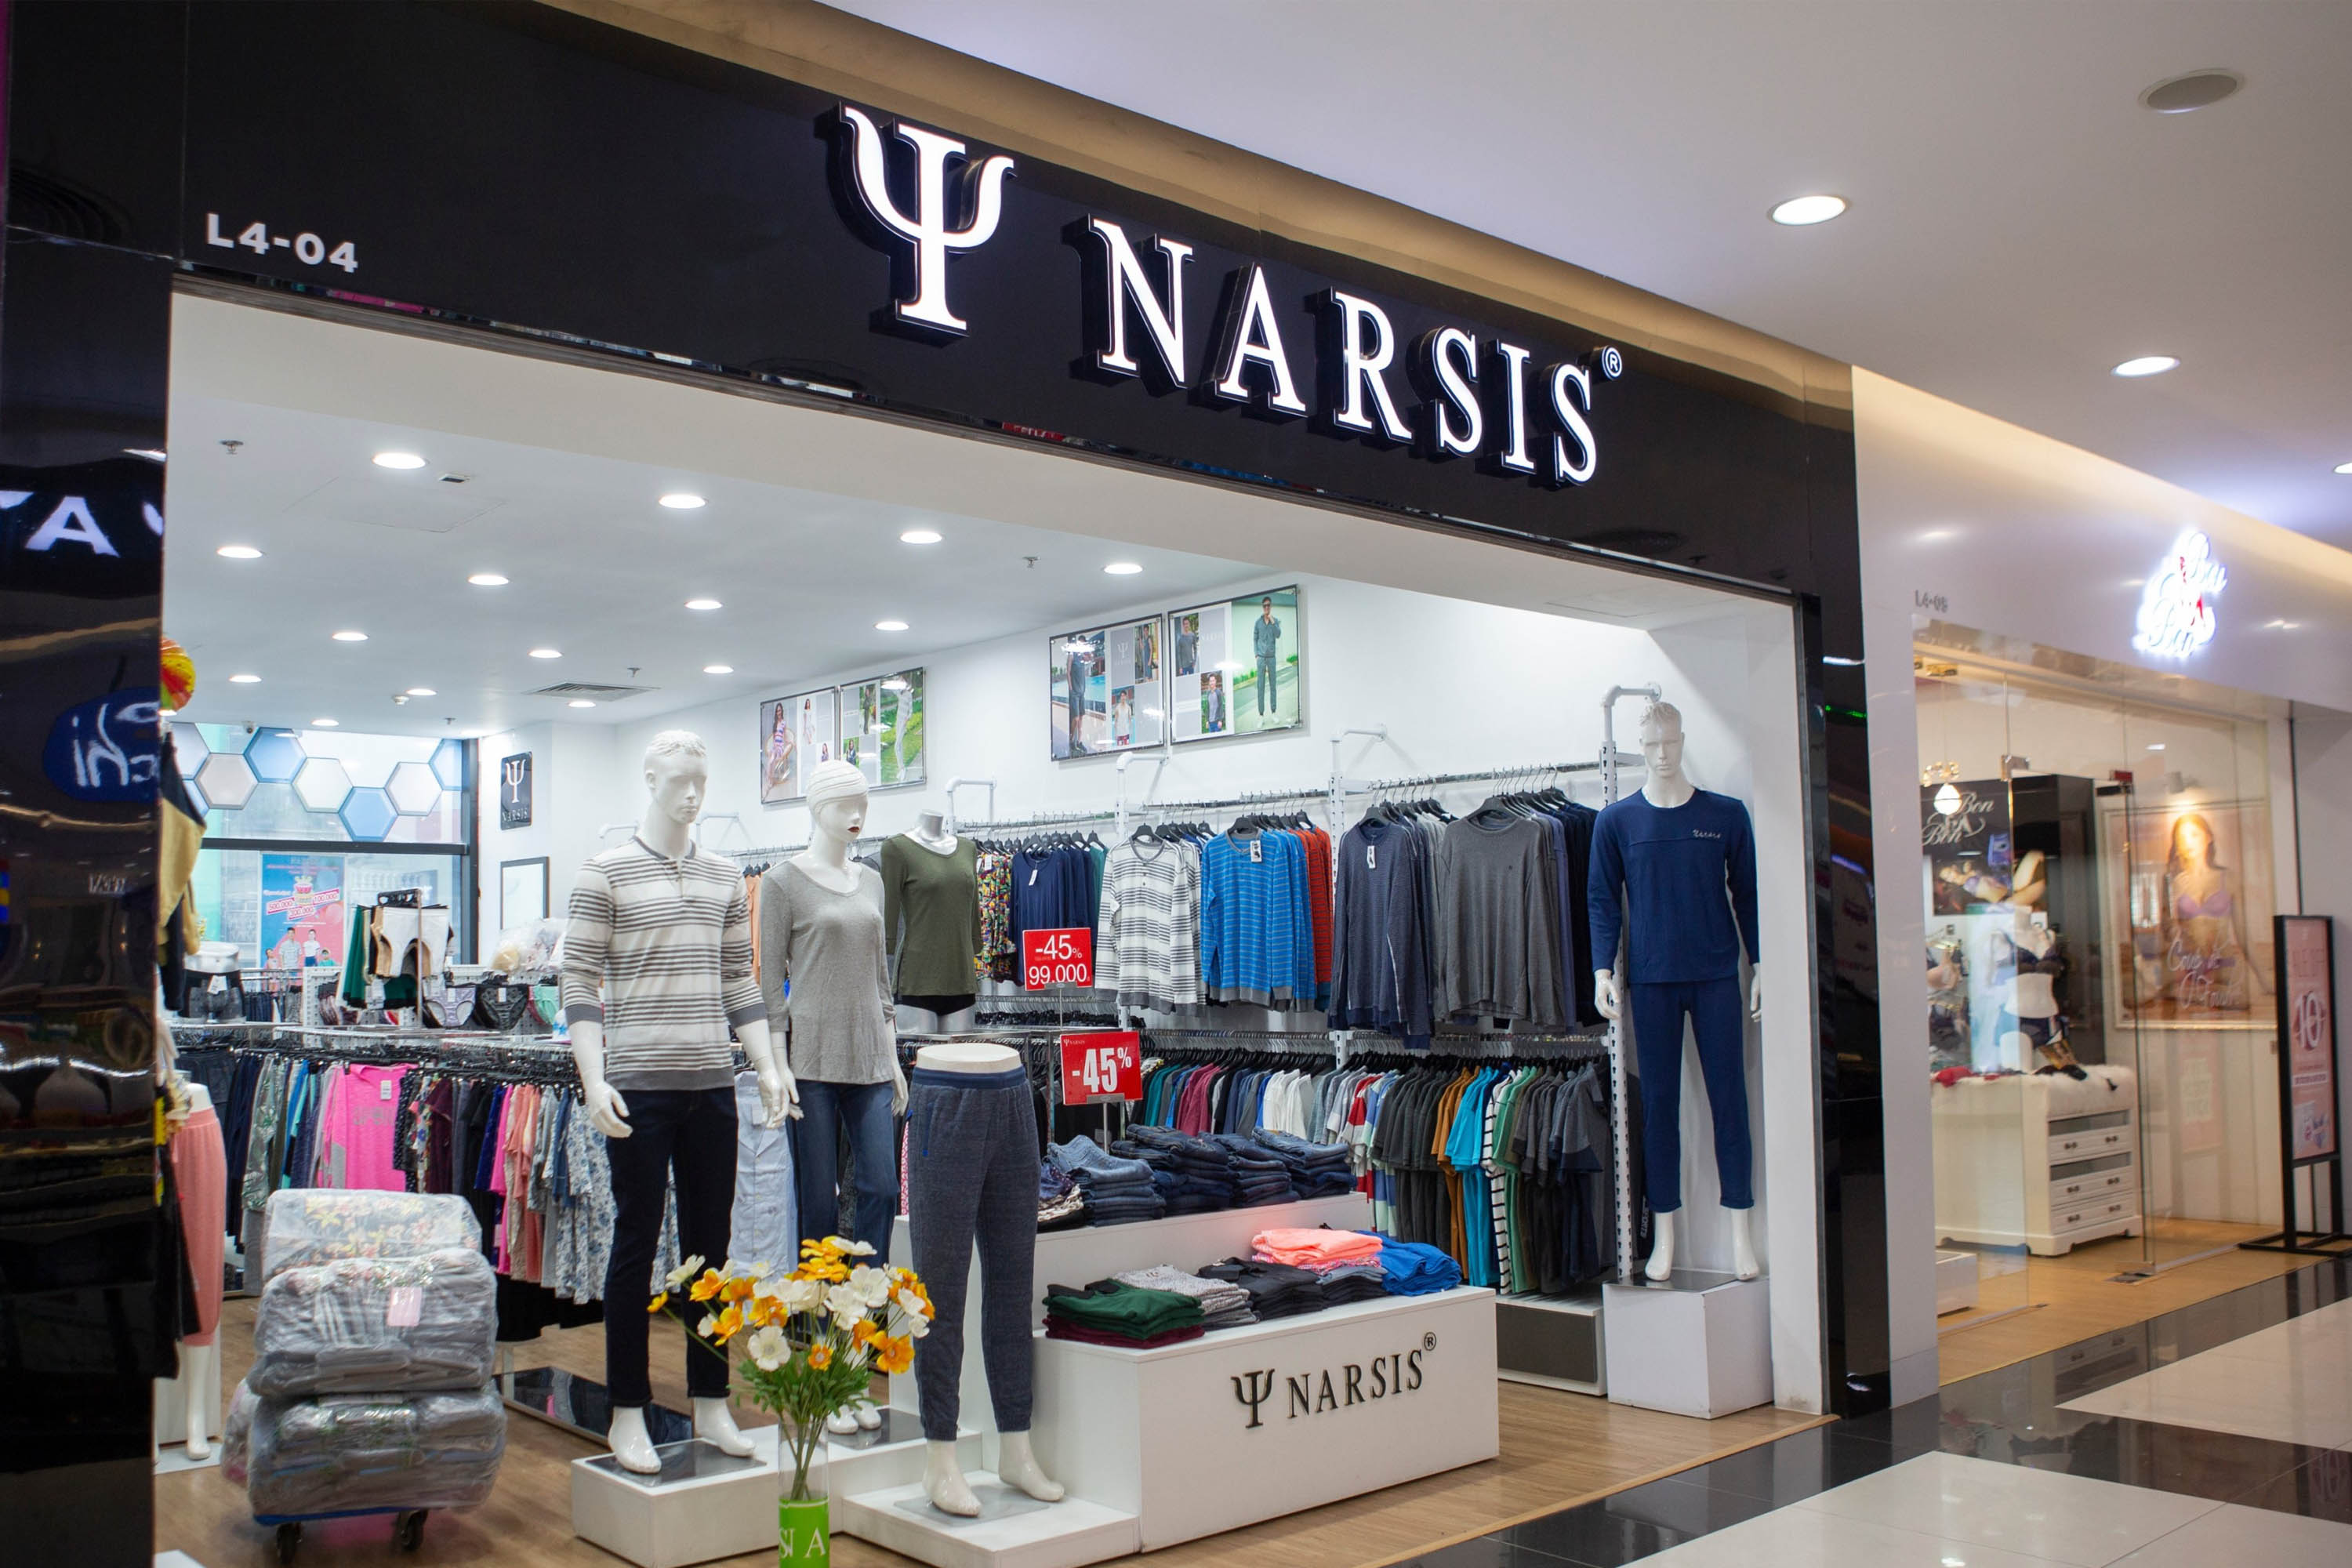 Narsis - Nhãn hàng thời trang nổi tiếng được nhiều người ưa chuộng tại Vincom